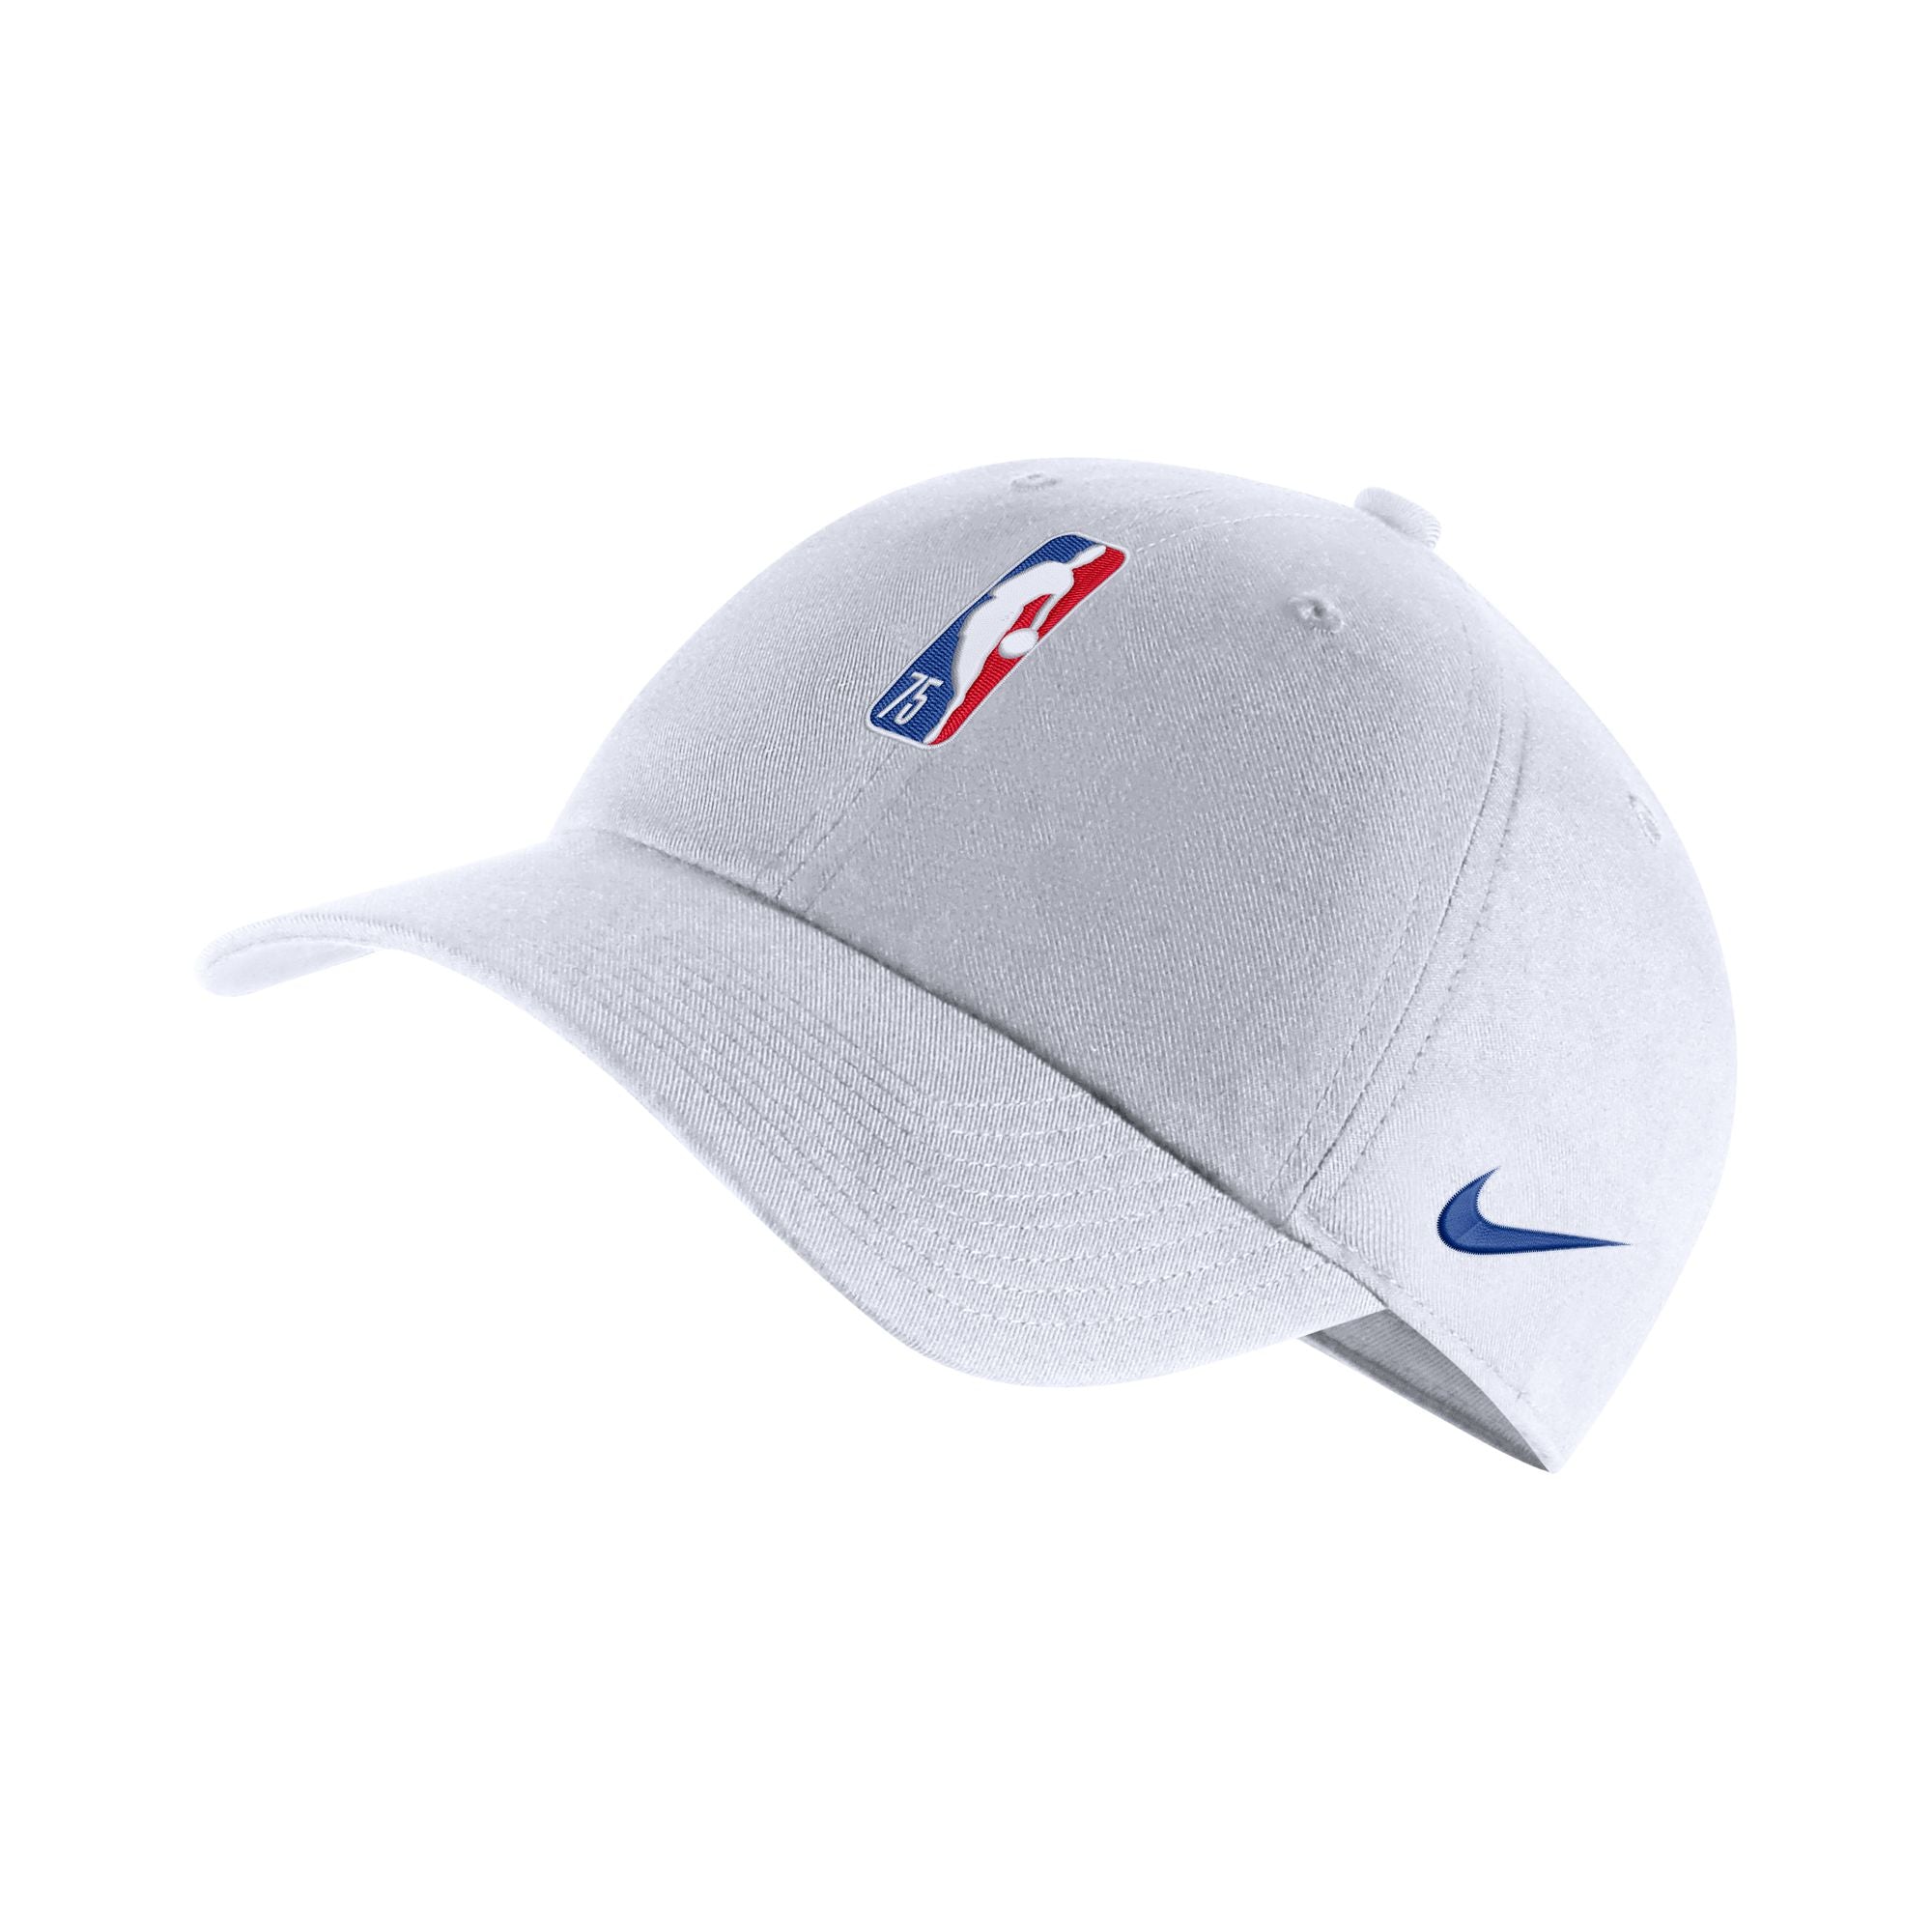 NBA Adjustable Cap